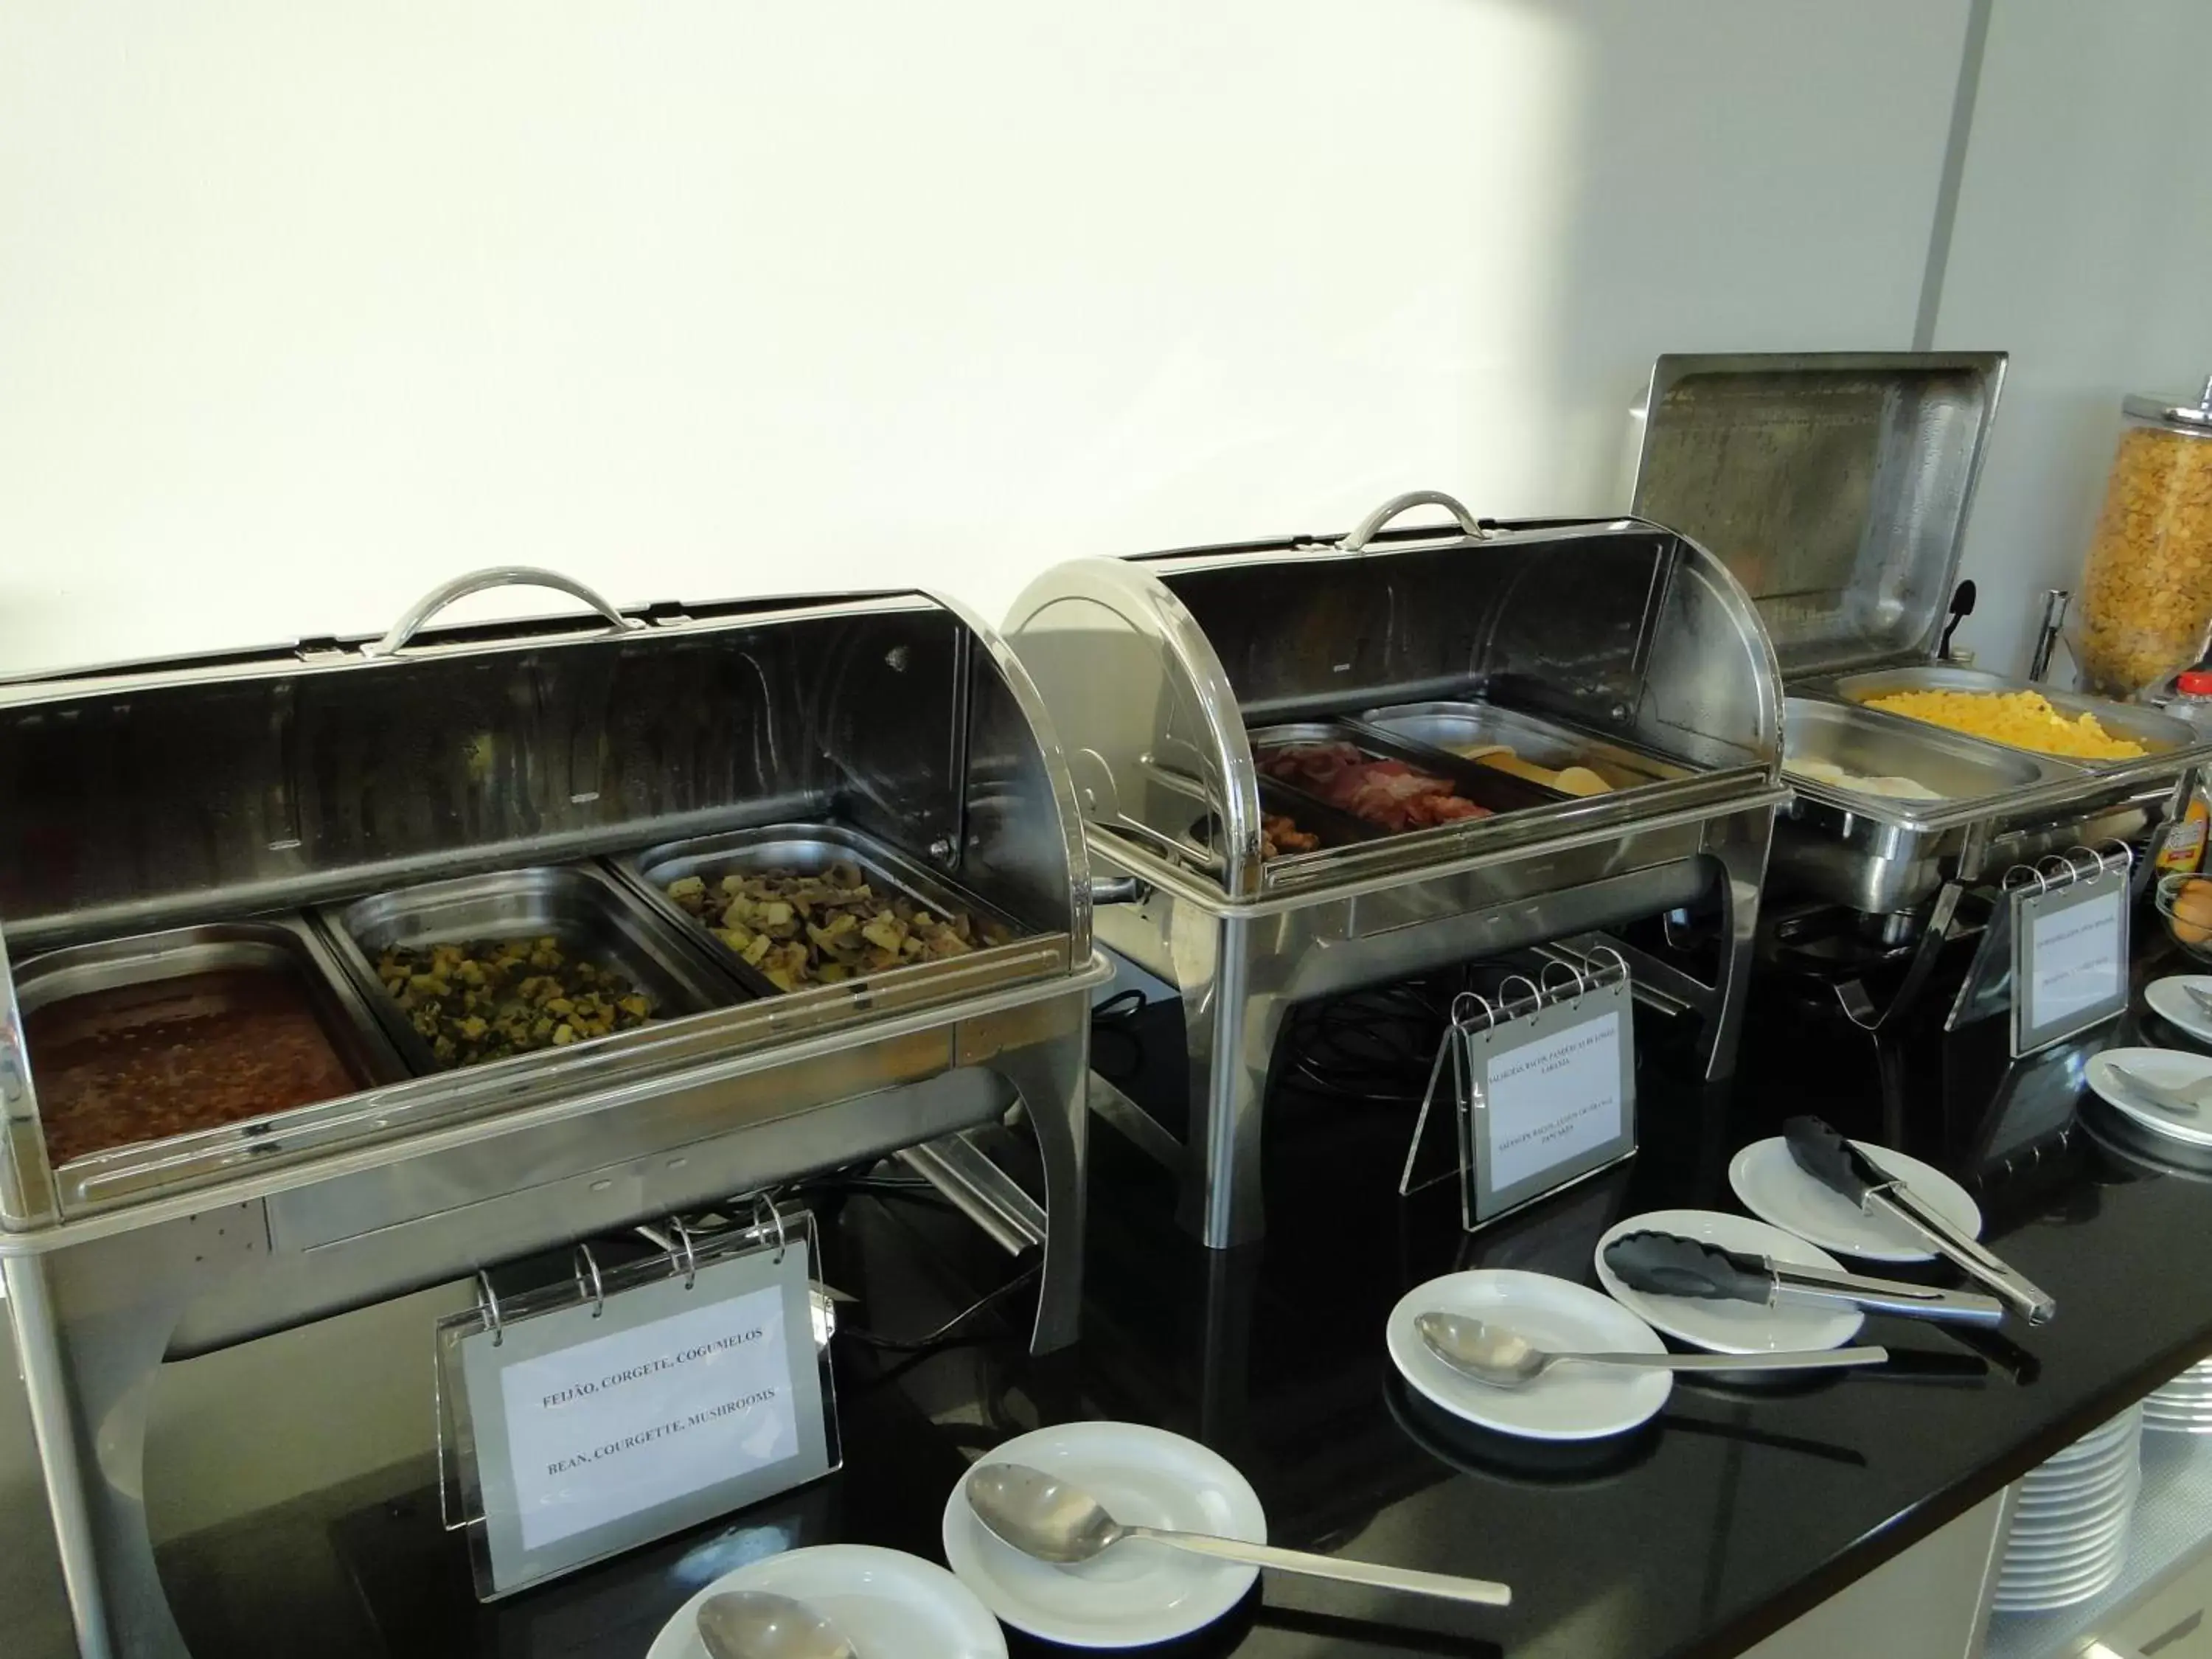 Buffet breakfast in Atlantida Mar Hotel